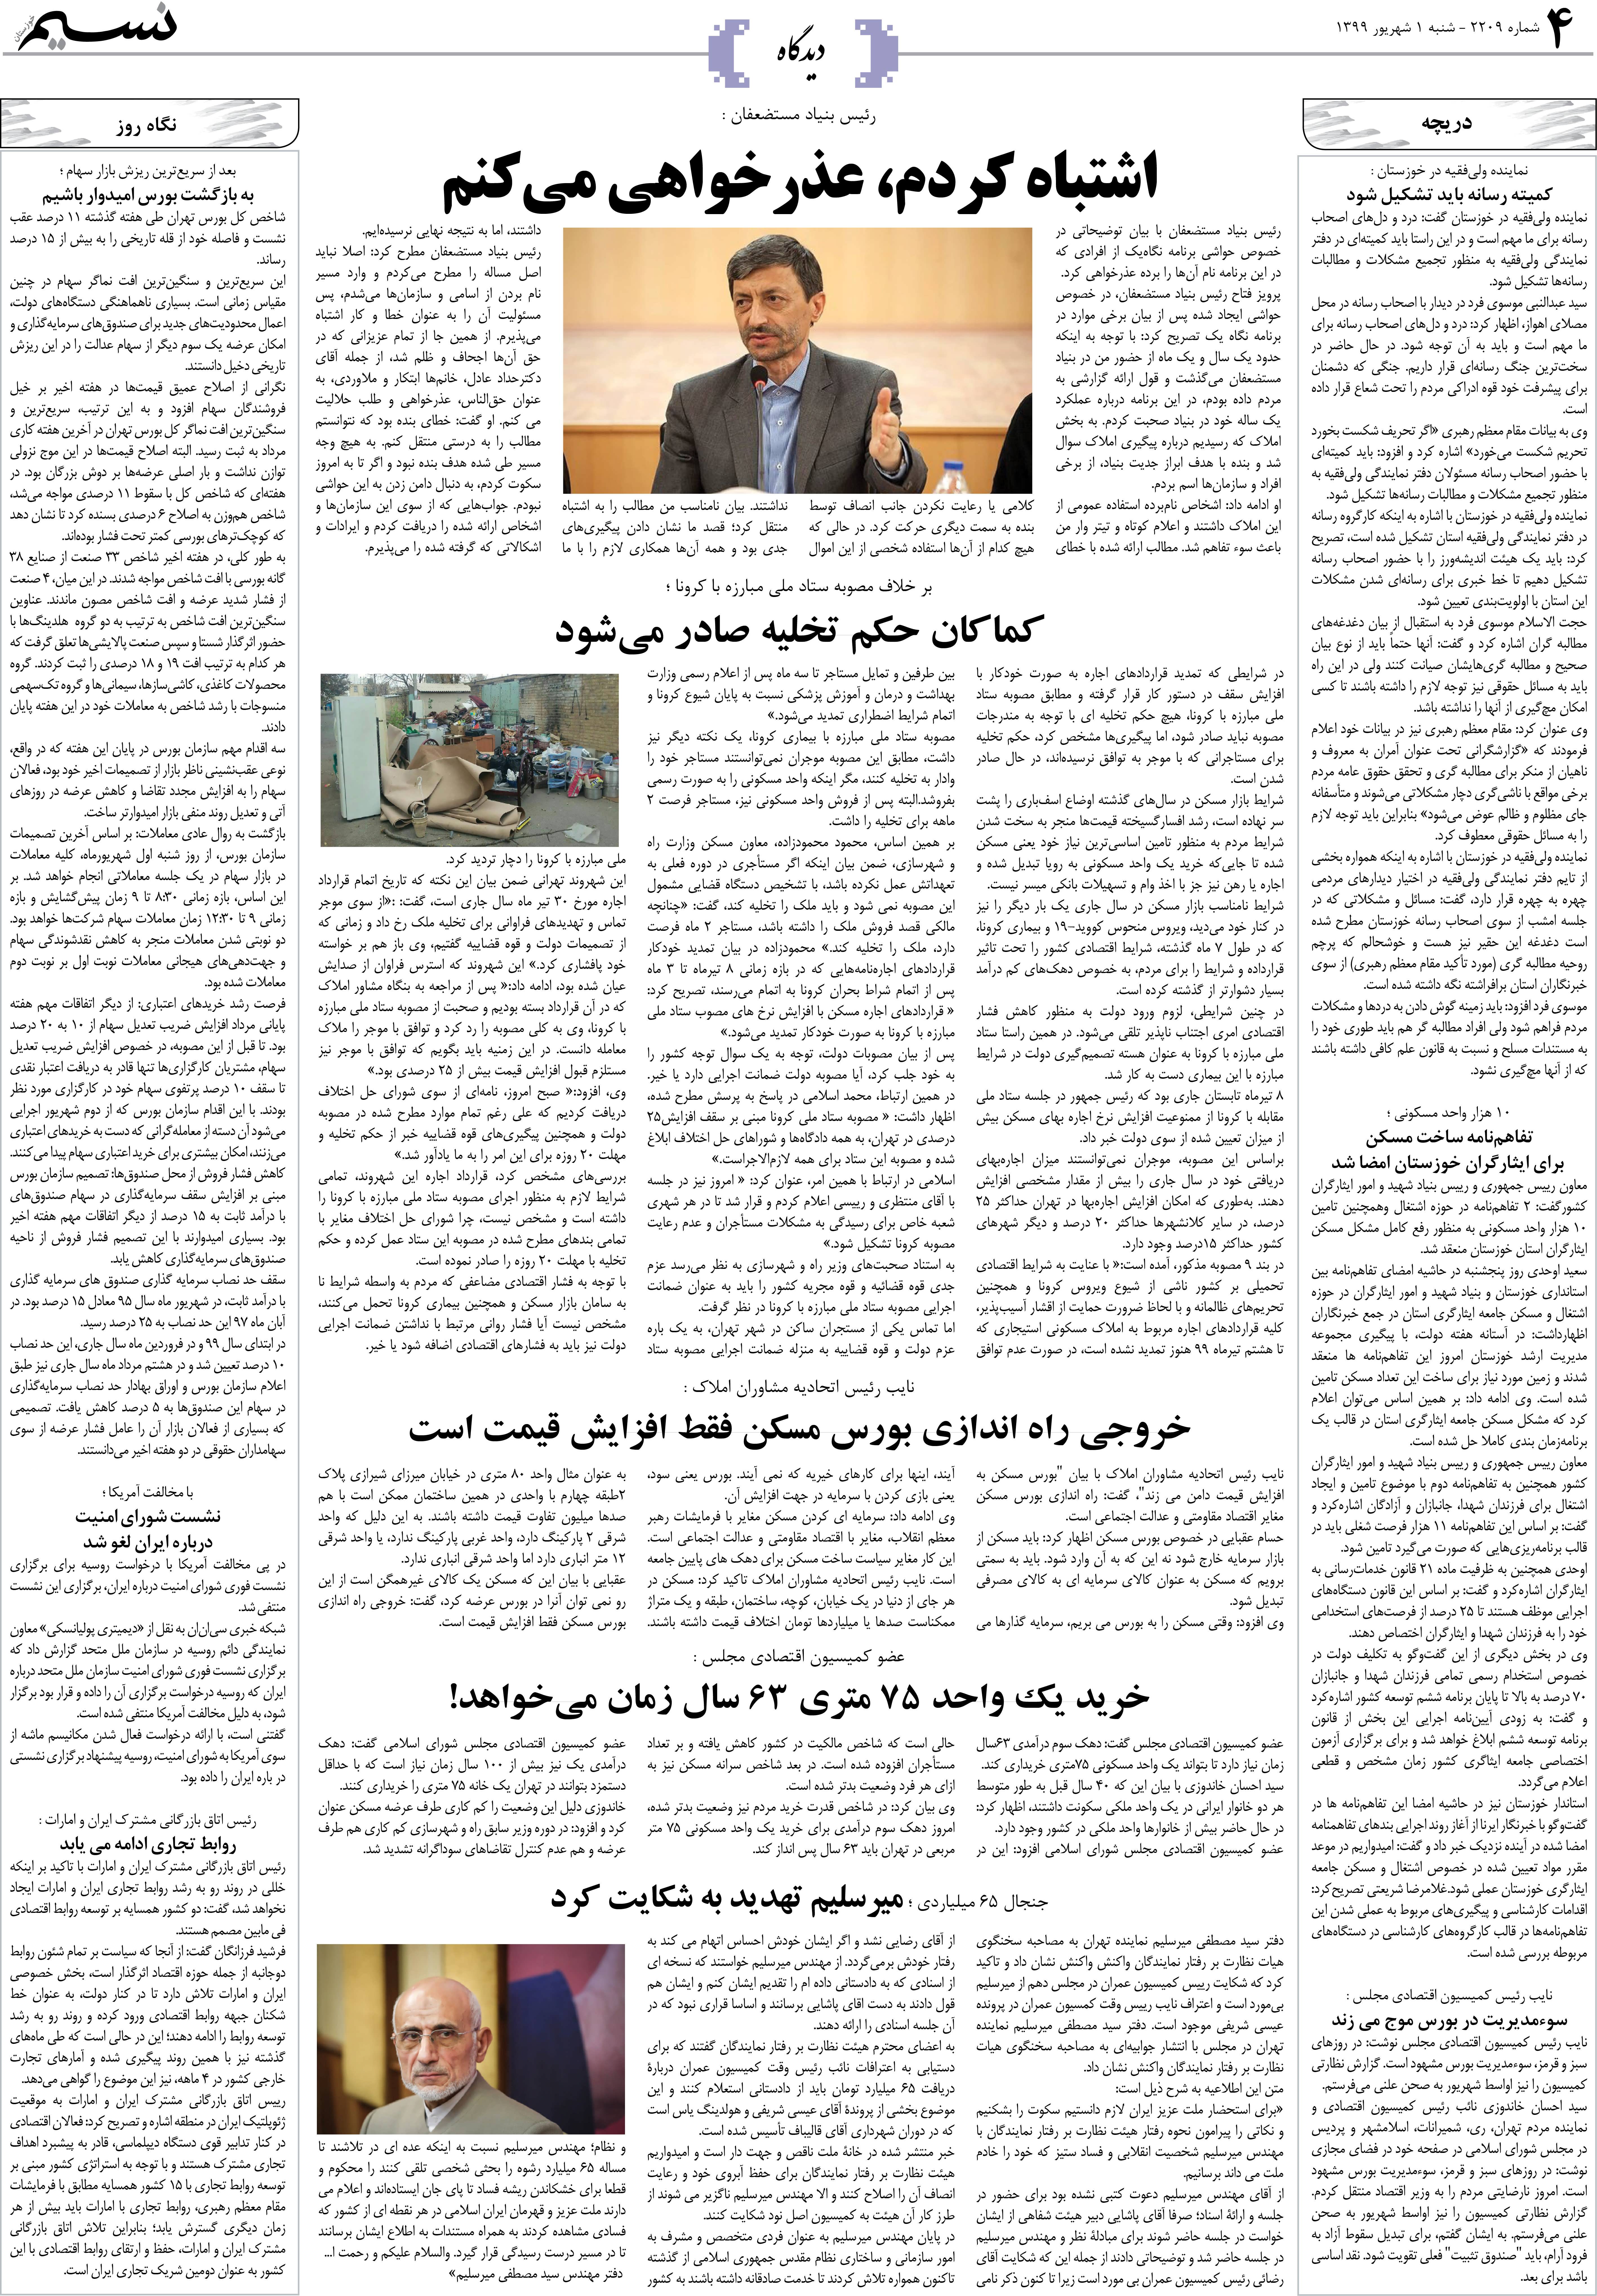 صفحه دیدگاه روزنامه نسیم شماره 2209